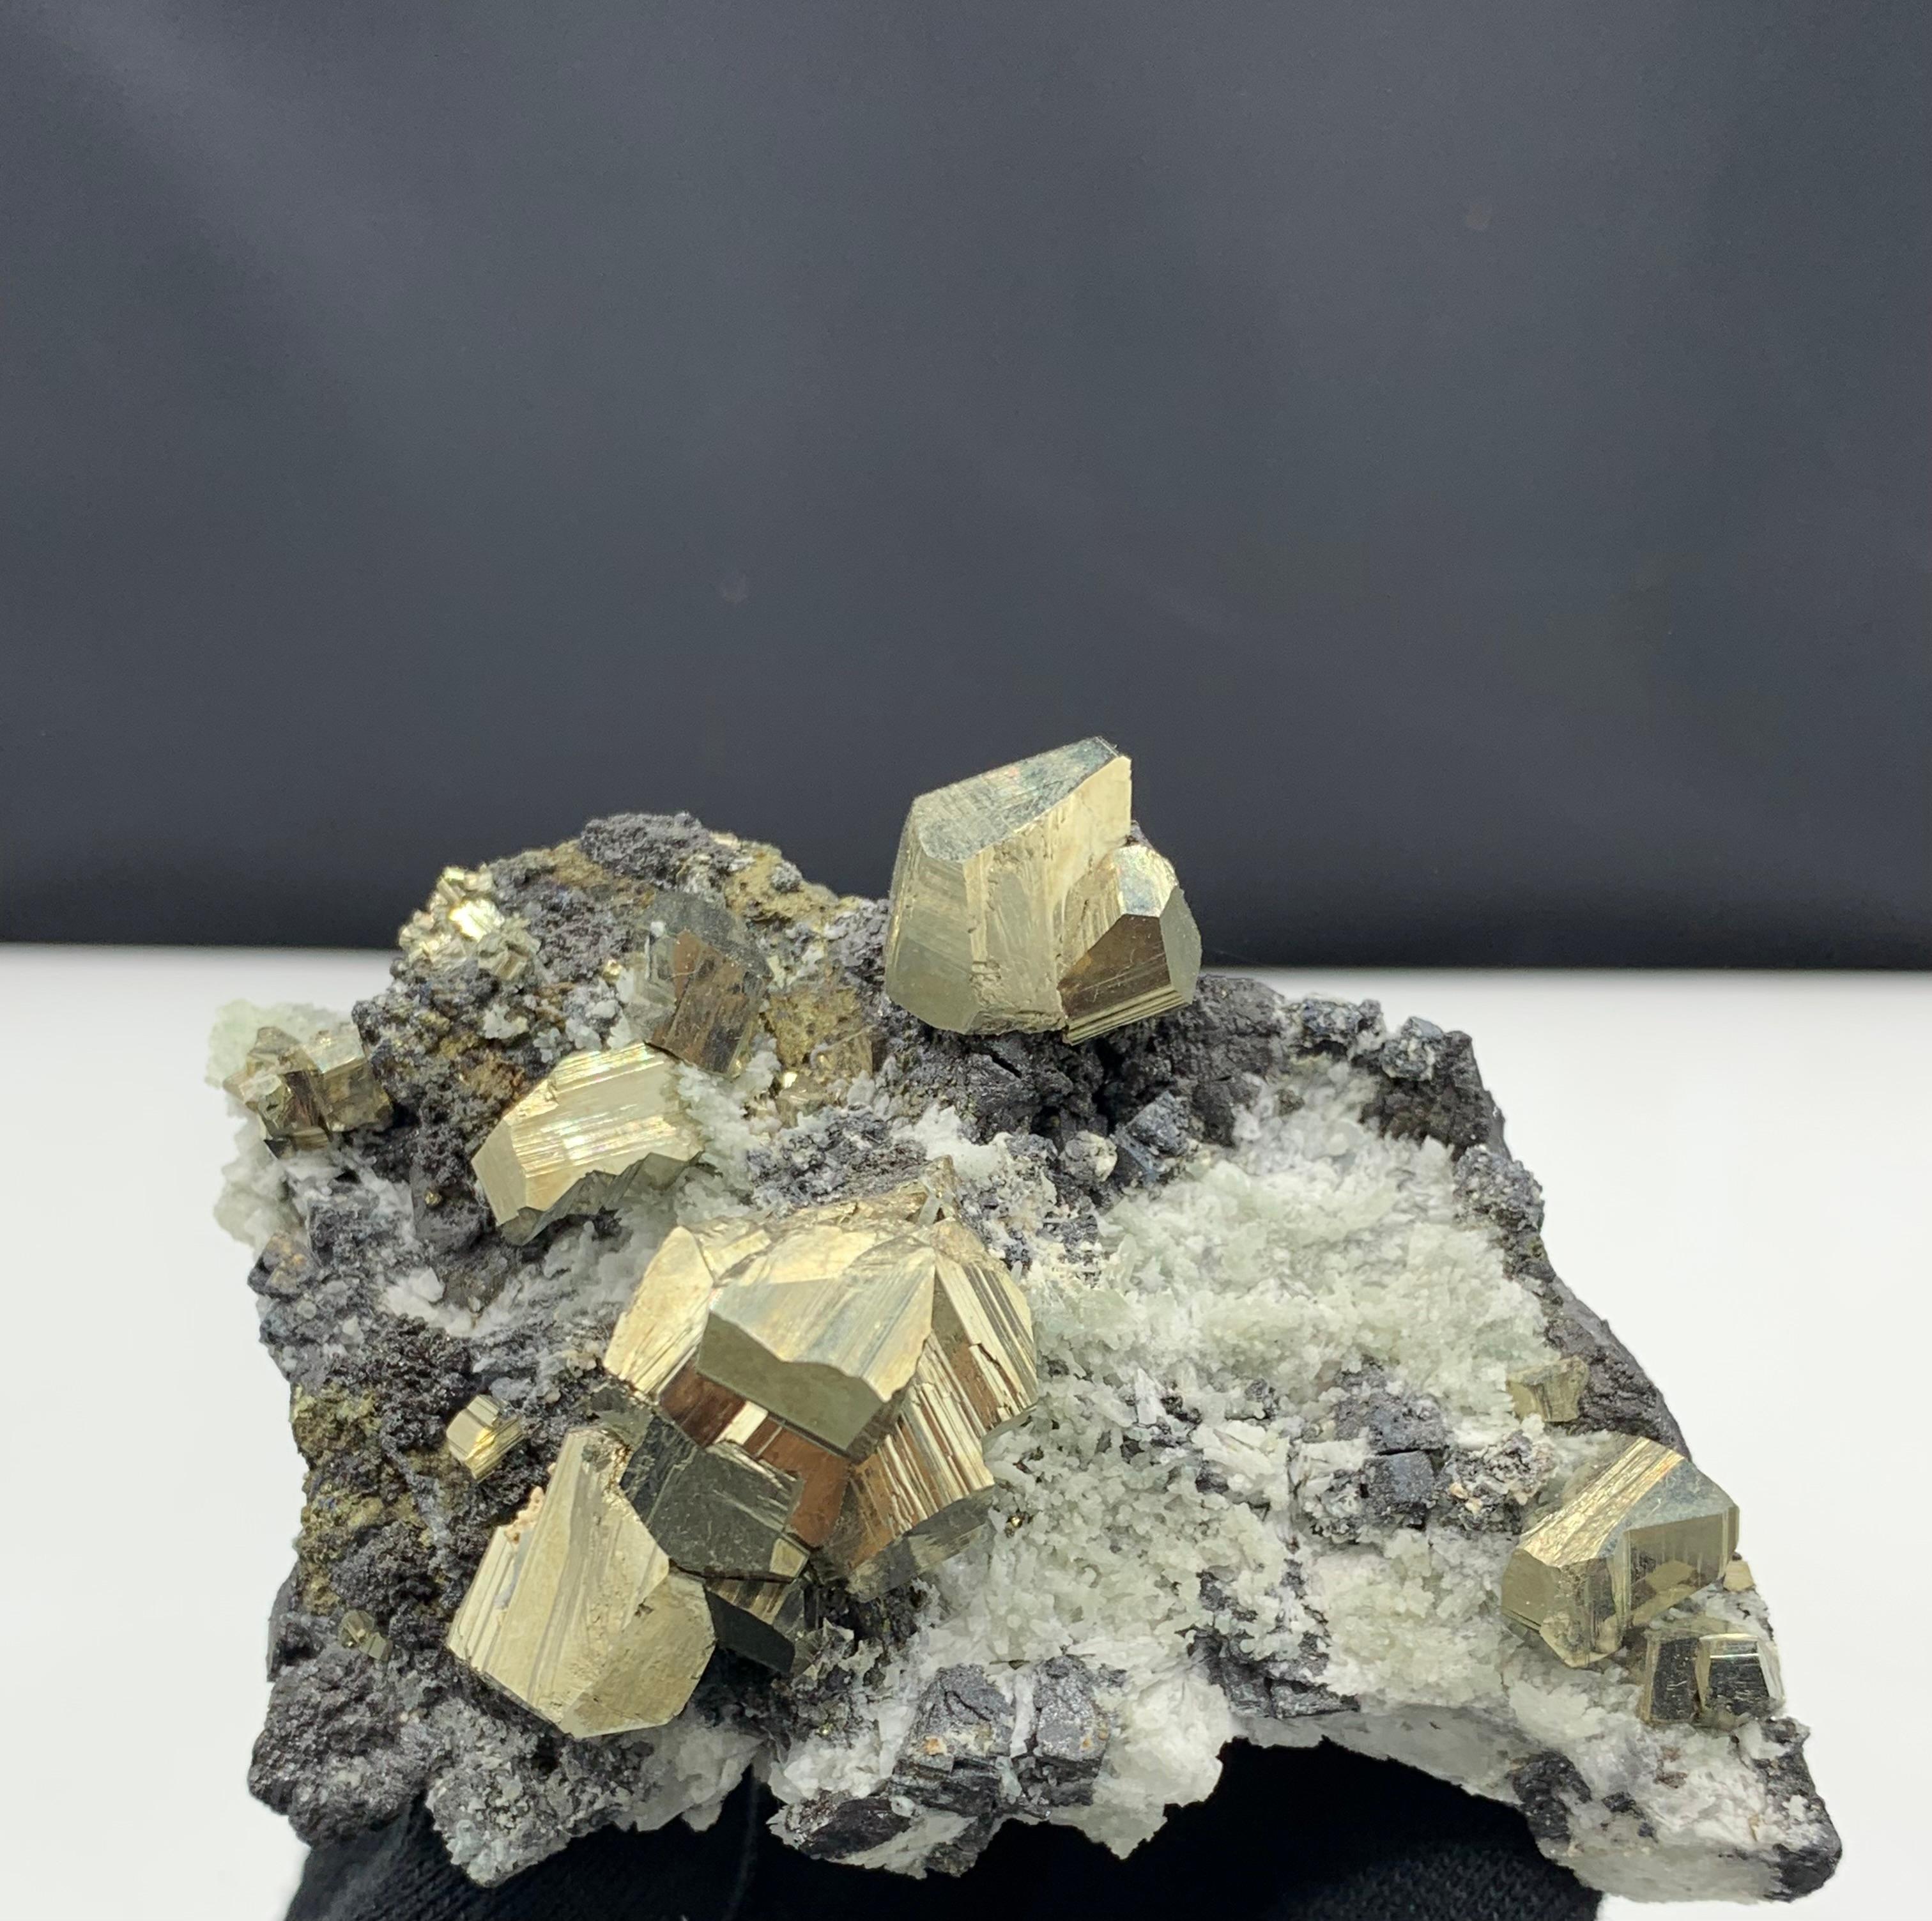 Spécimen pyrite glamour du Pakistan, 286.37 grammes 

Poids : 286,37 grammes
Dimension : 6,5 x 11 x 6,8 cm
Origine : Pakistan 

La pyrite se trouve dans une grande variété de contextes géologiques, des roches ignées, sédimentaires et métamorphiques